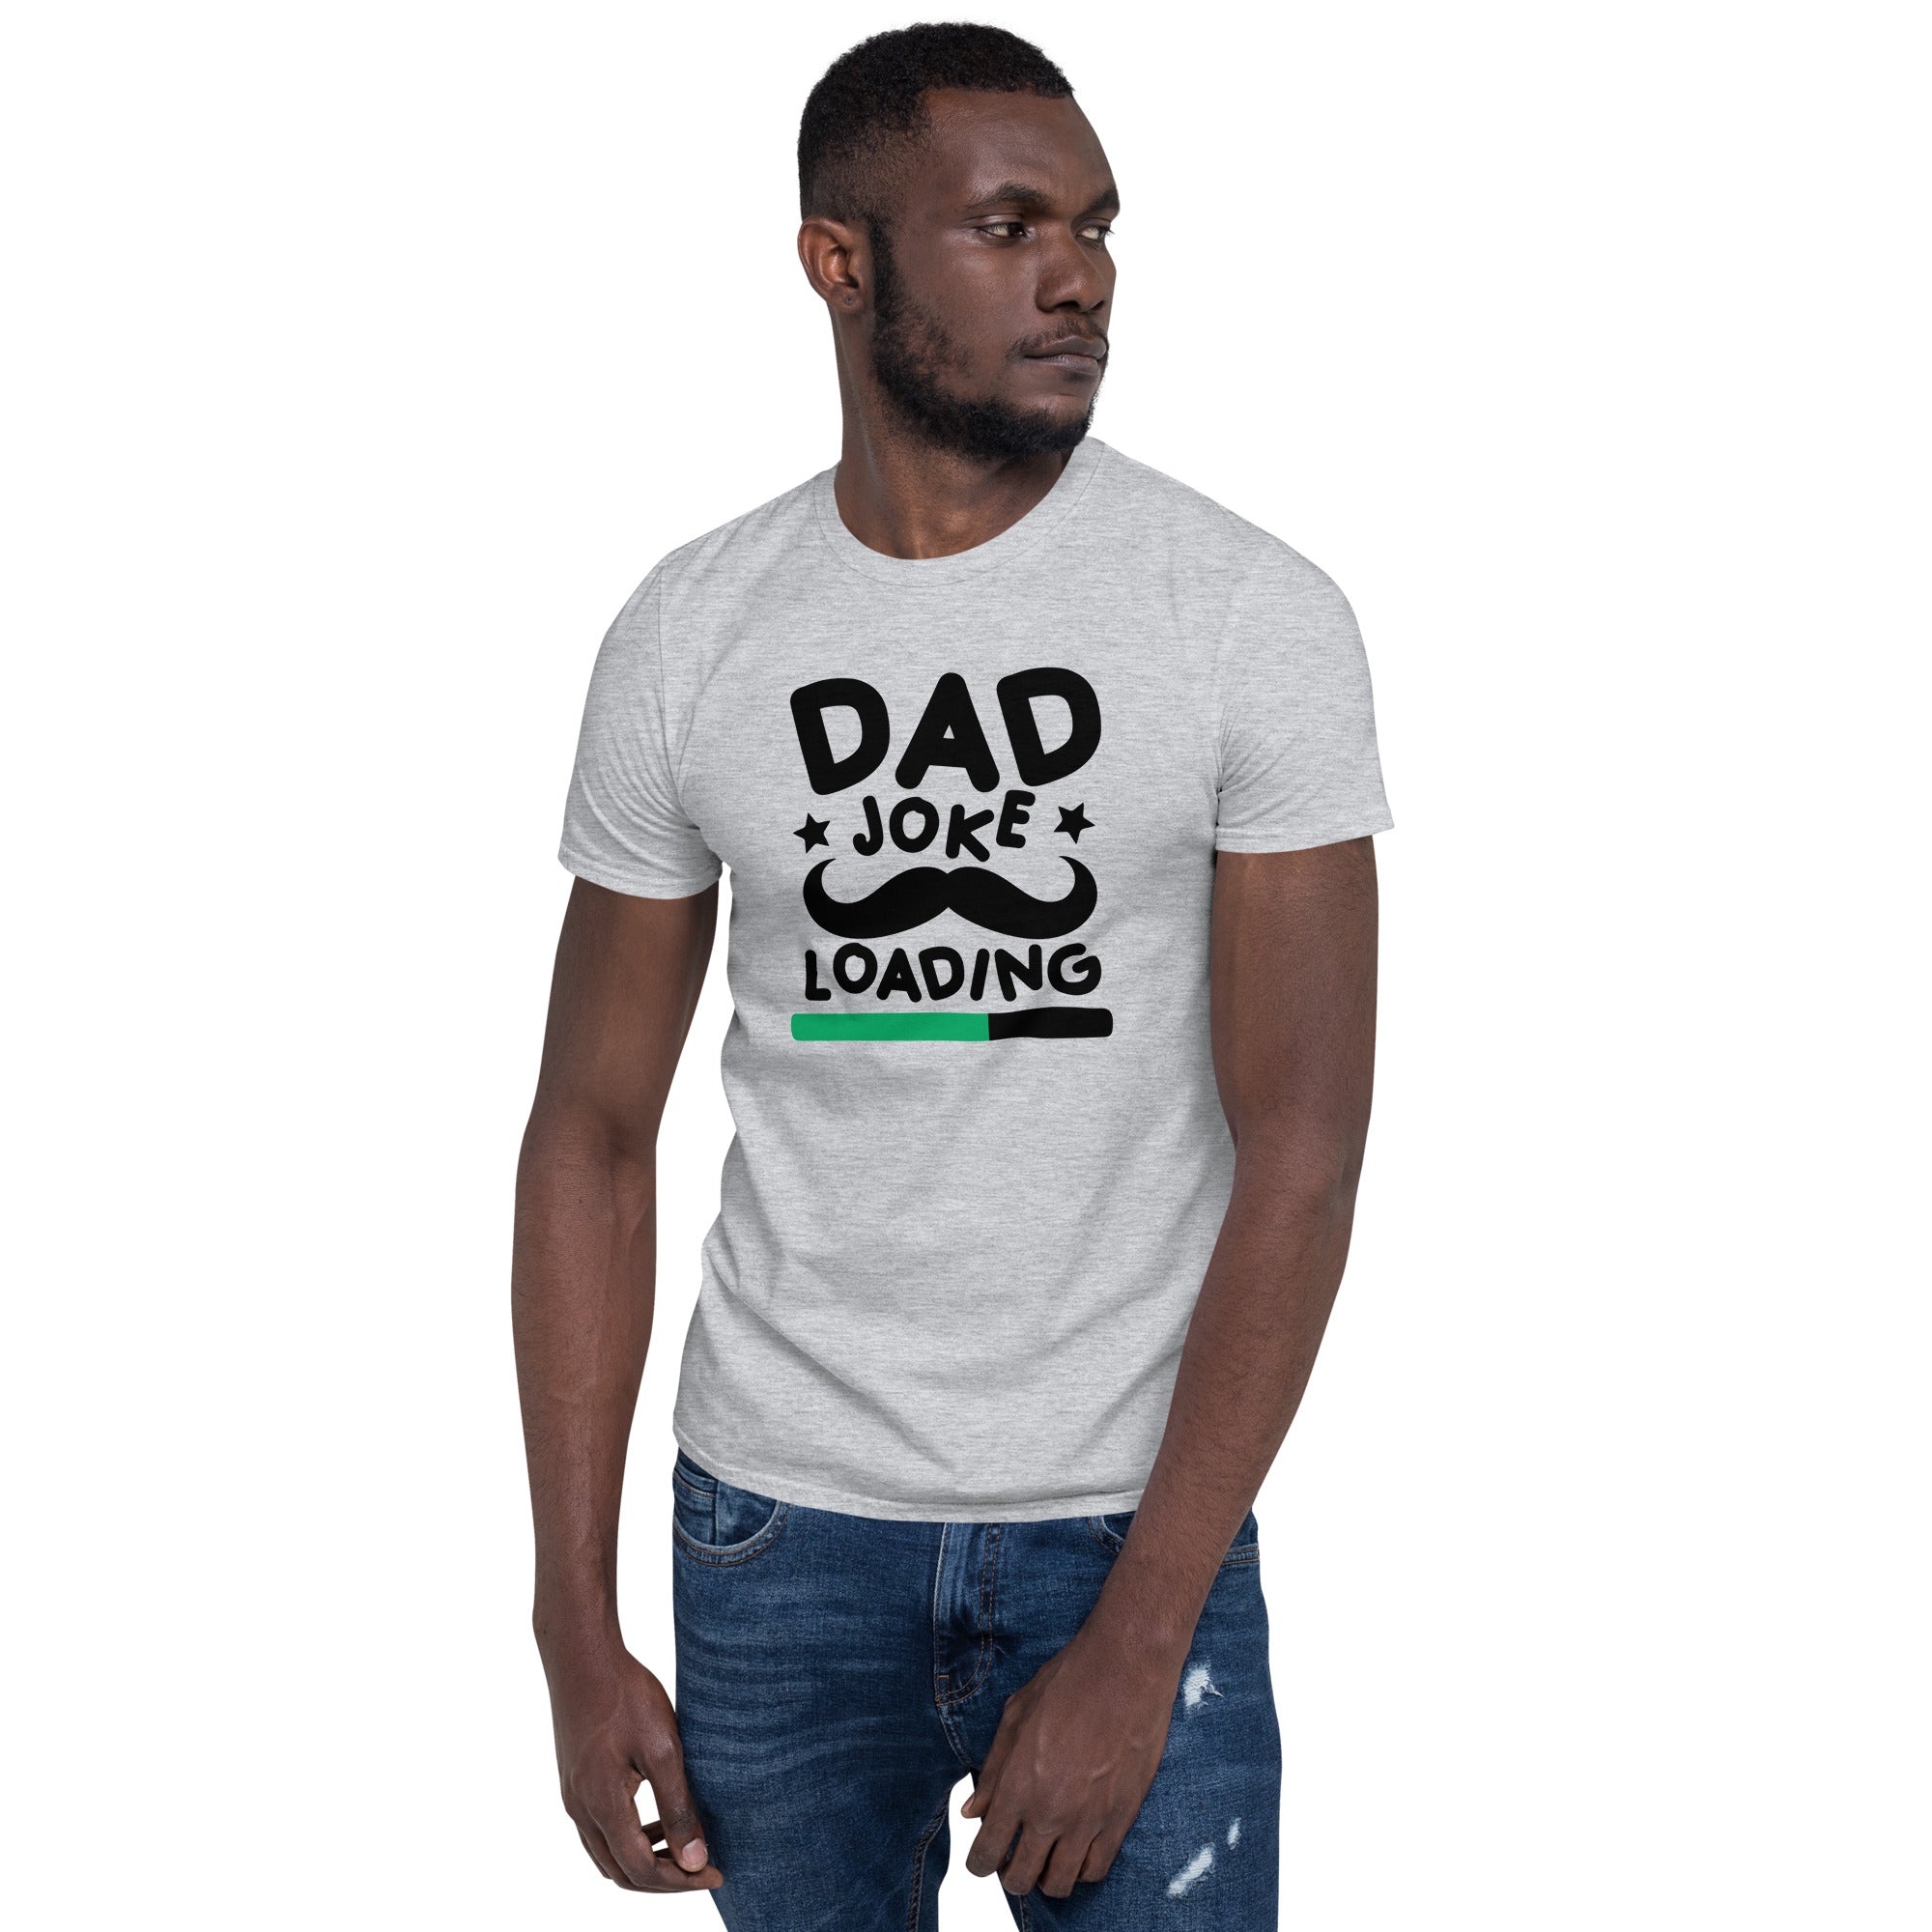 Dad Joke Loading - Short-Sleeve Unisex T-Shirt